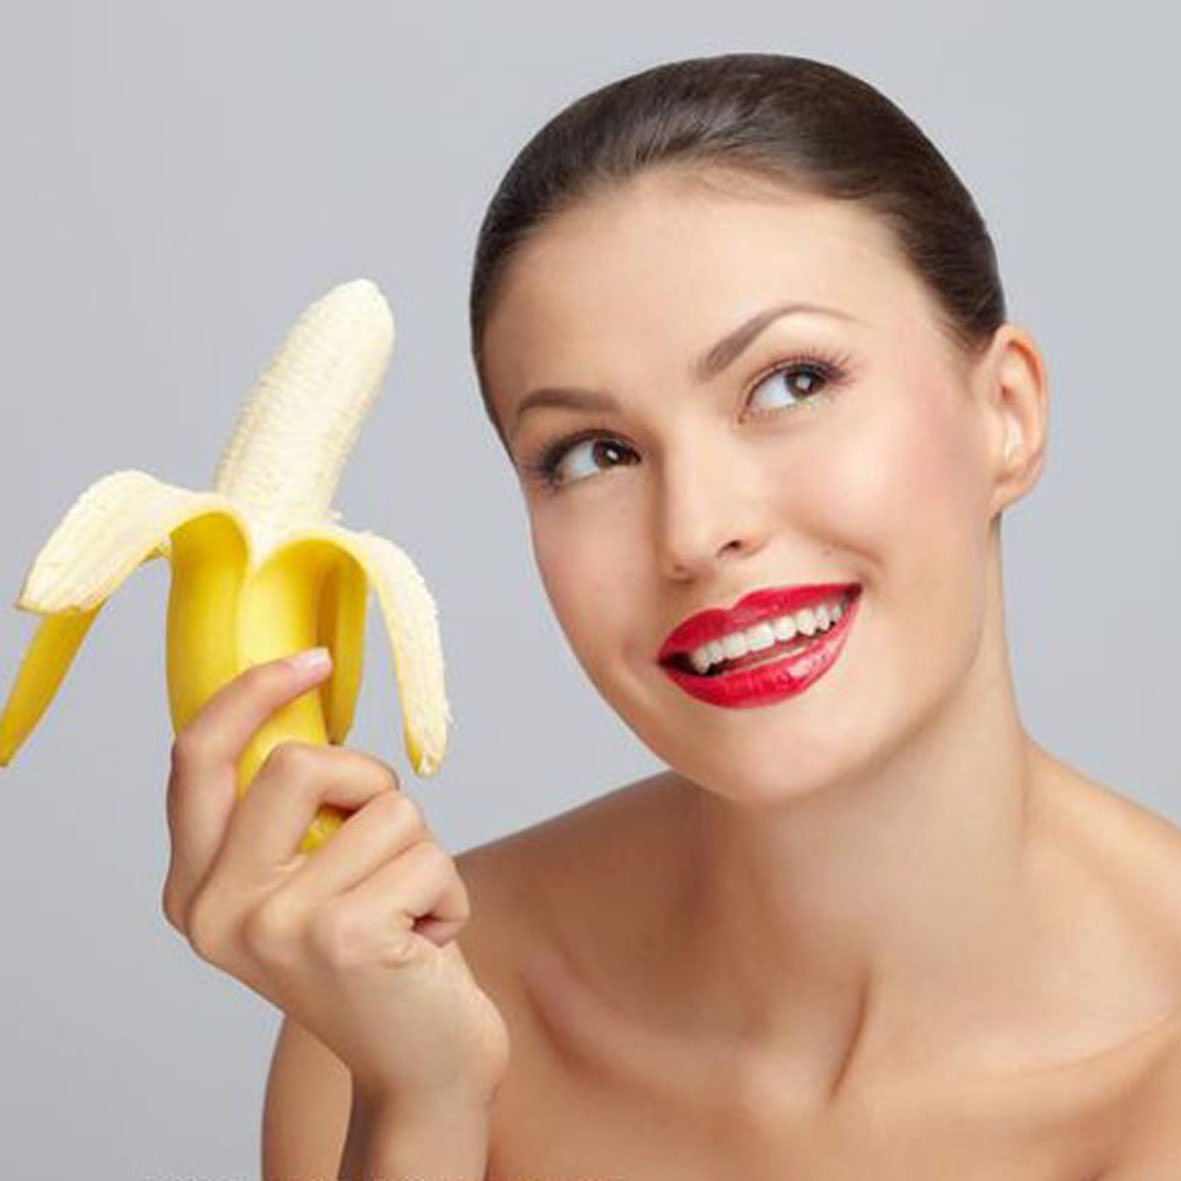 15 проблем со здоровьем, которые можно решить с помощью бананов